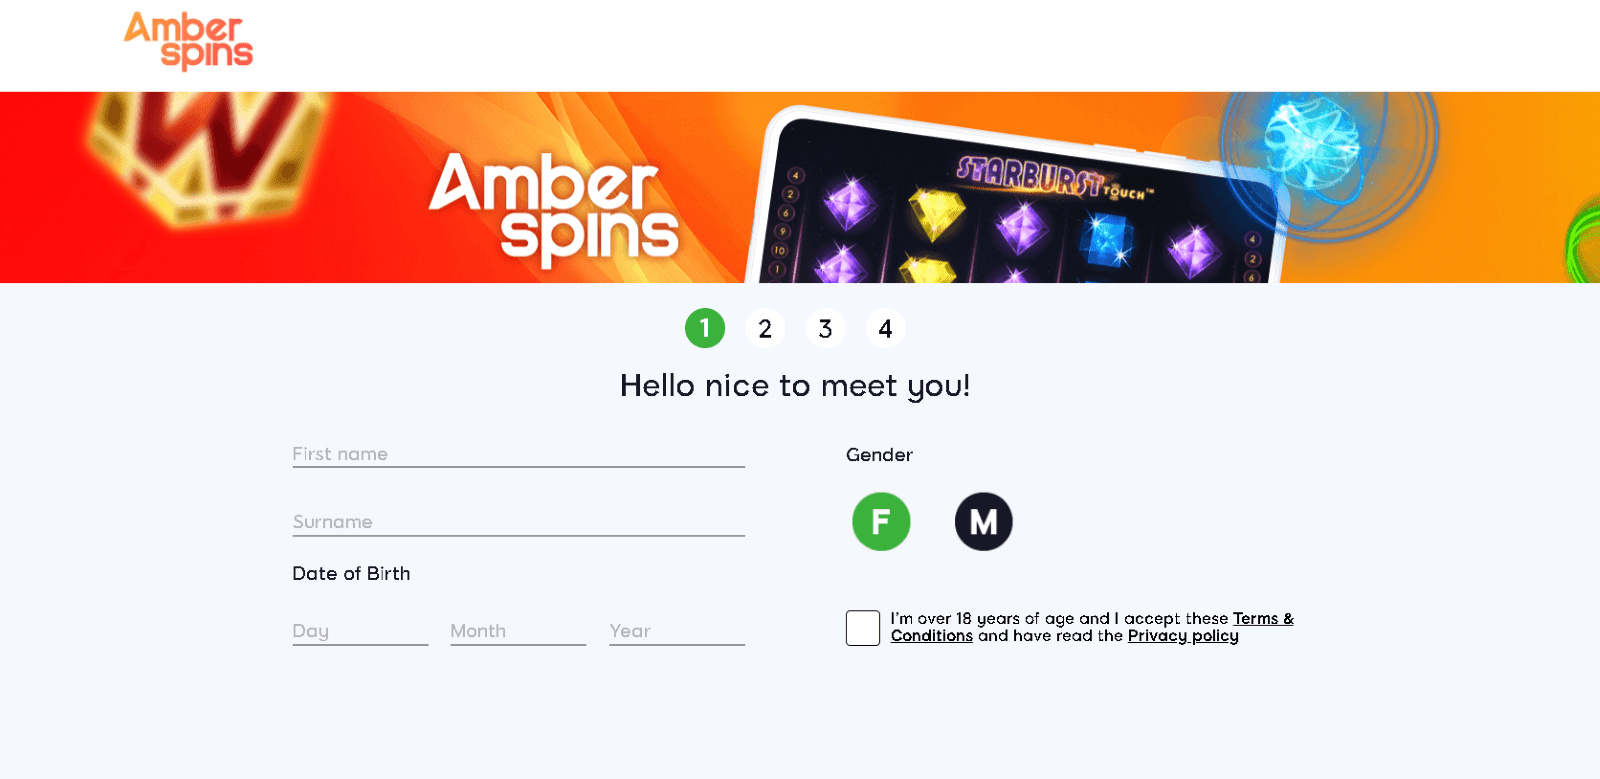 Amber spins screenshot